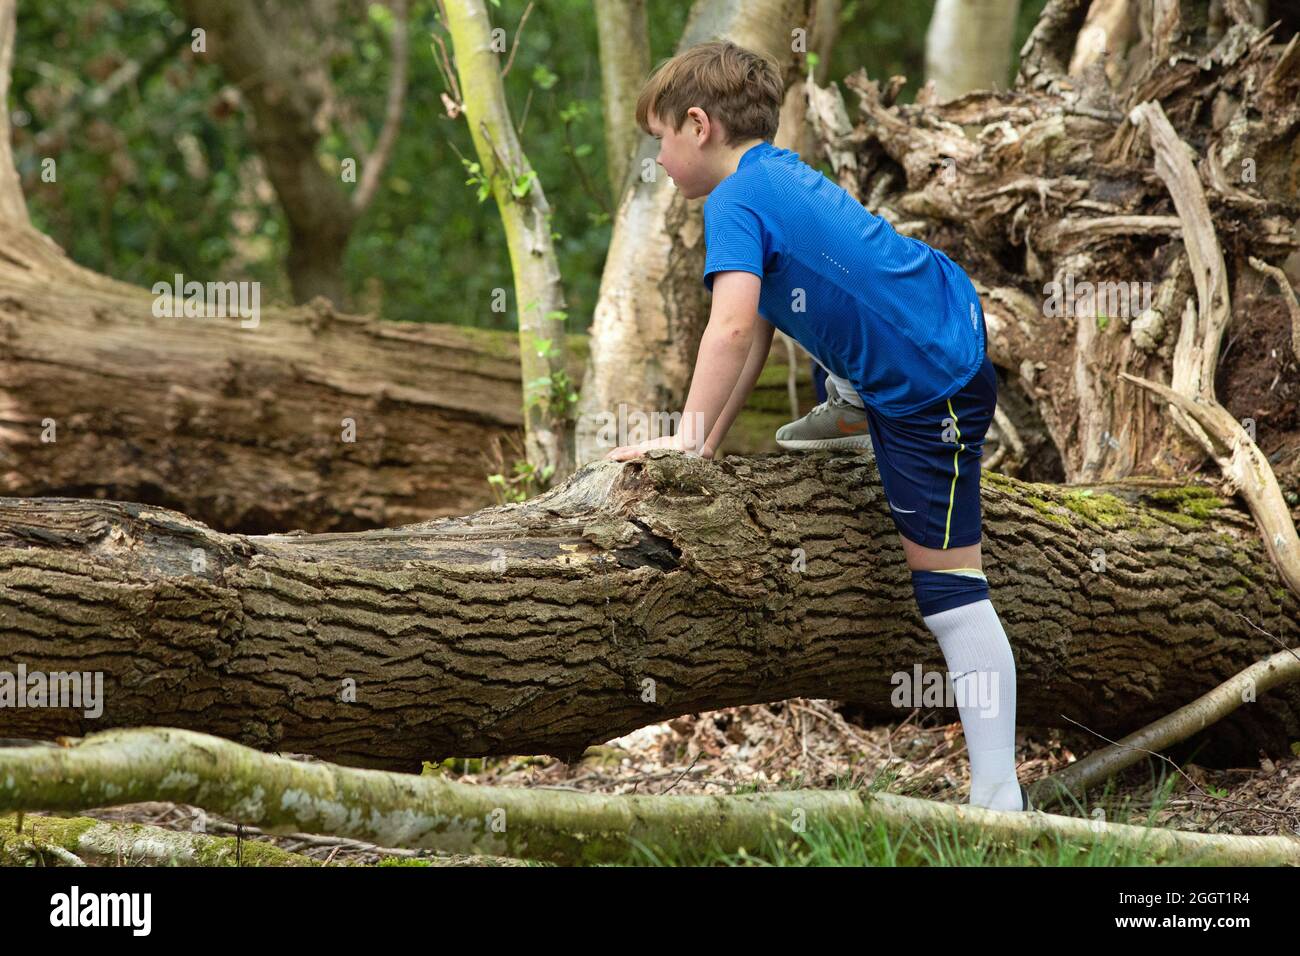 Giovane ragazzo scoprendo la sfida e l'esperienza di arrampicarsi su nature ostacoli naturali, sotto forma di un tronco di albero morto caduto nel bosco. Foto Stock